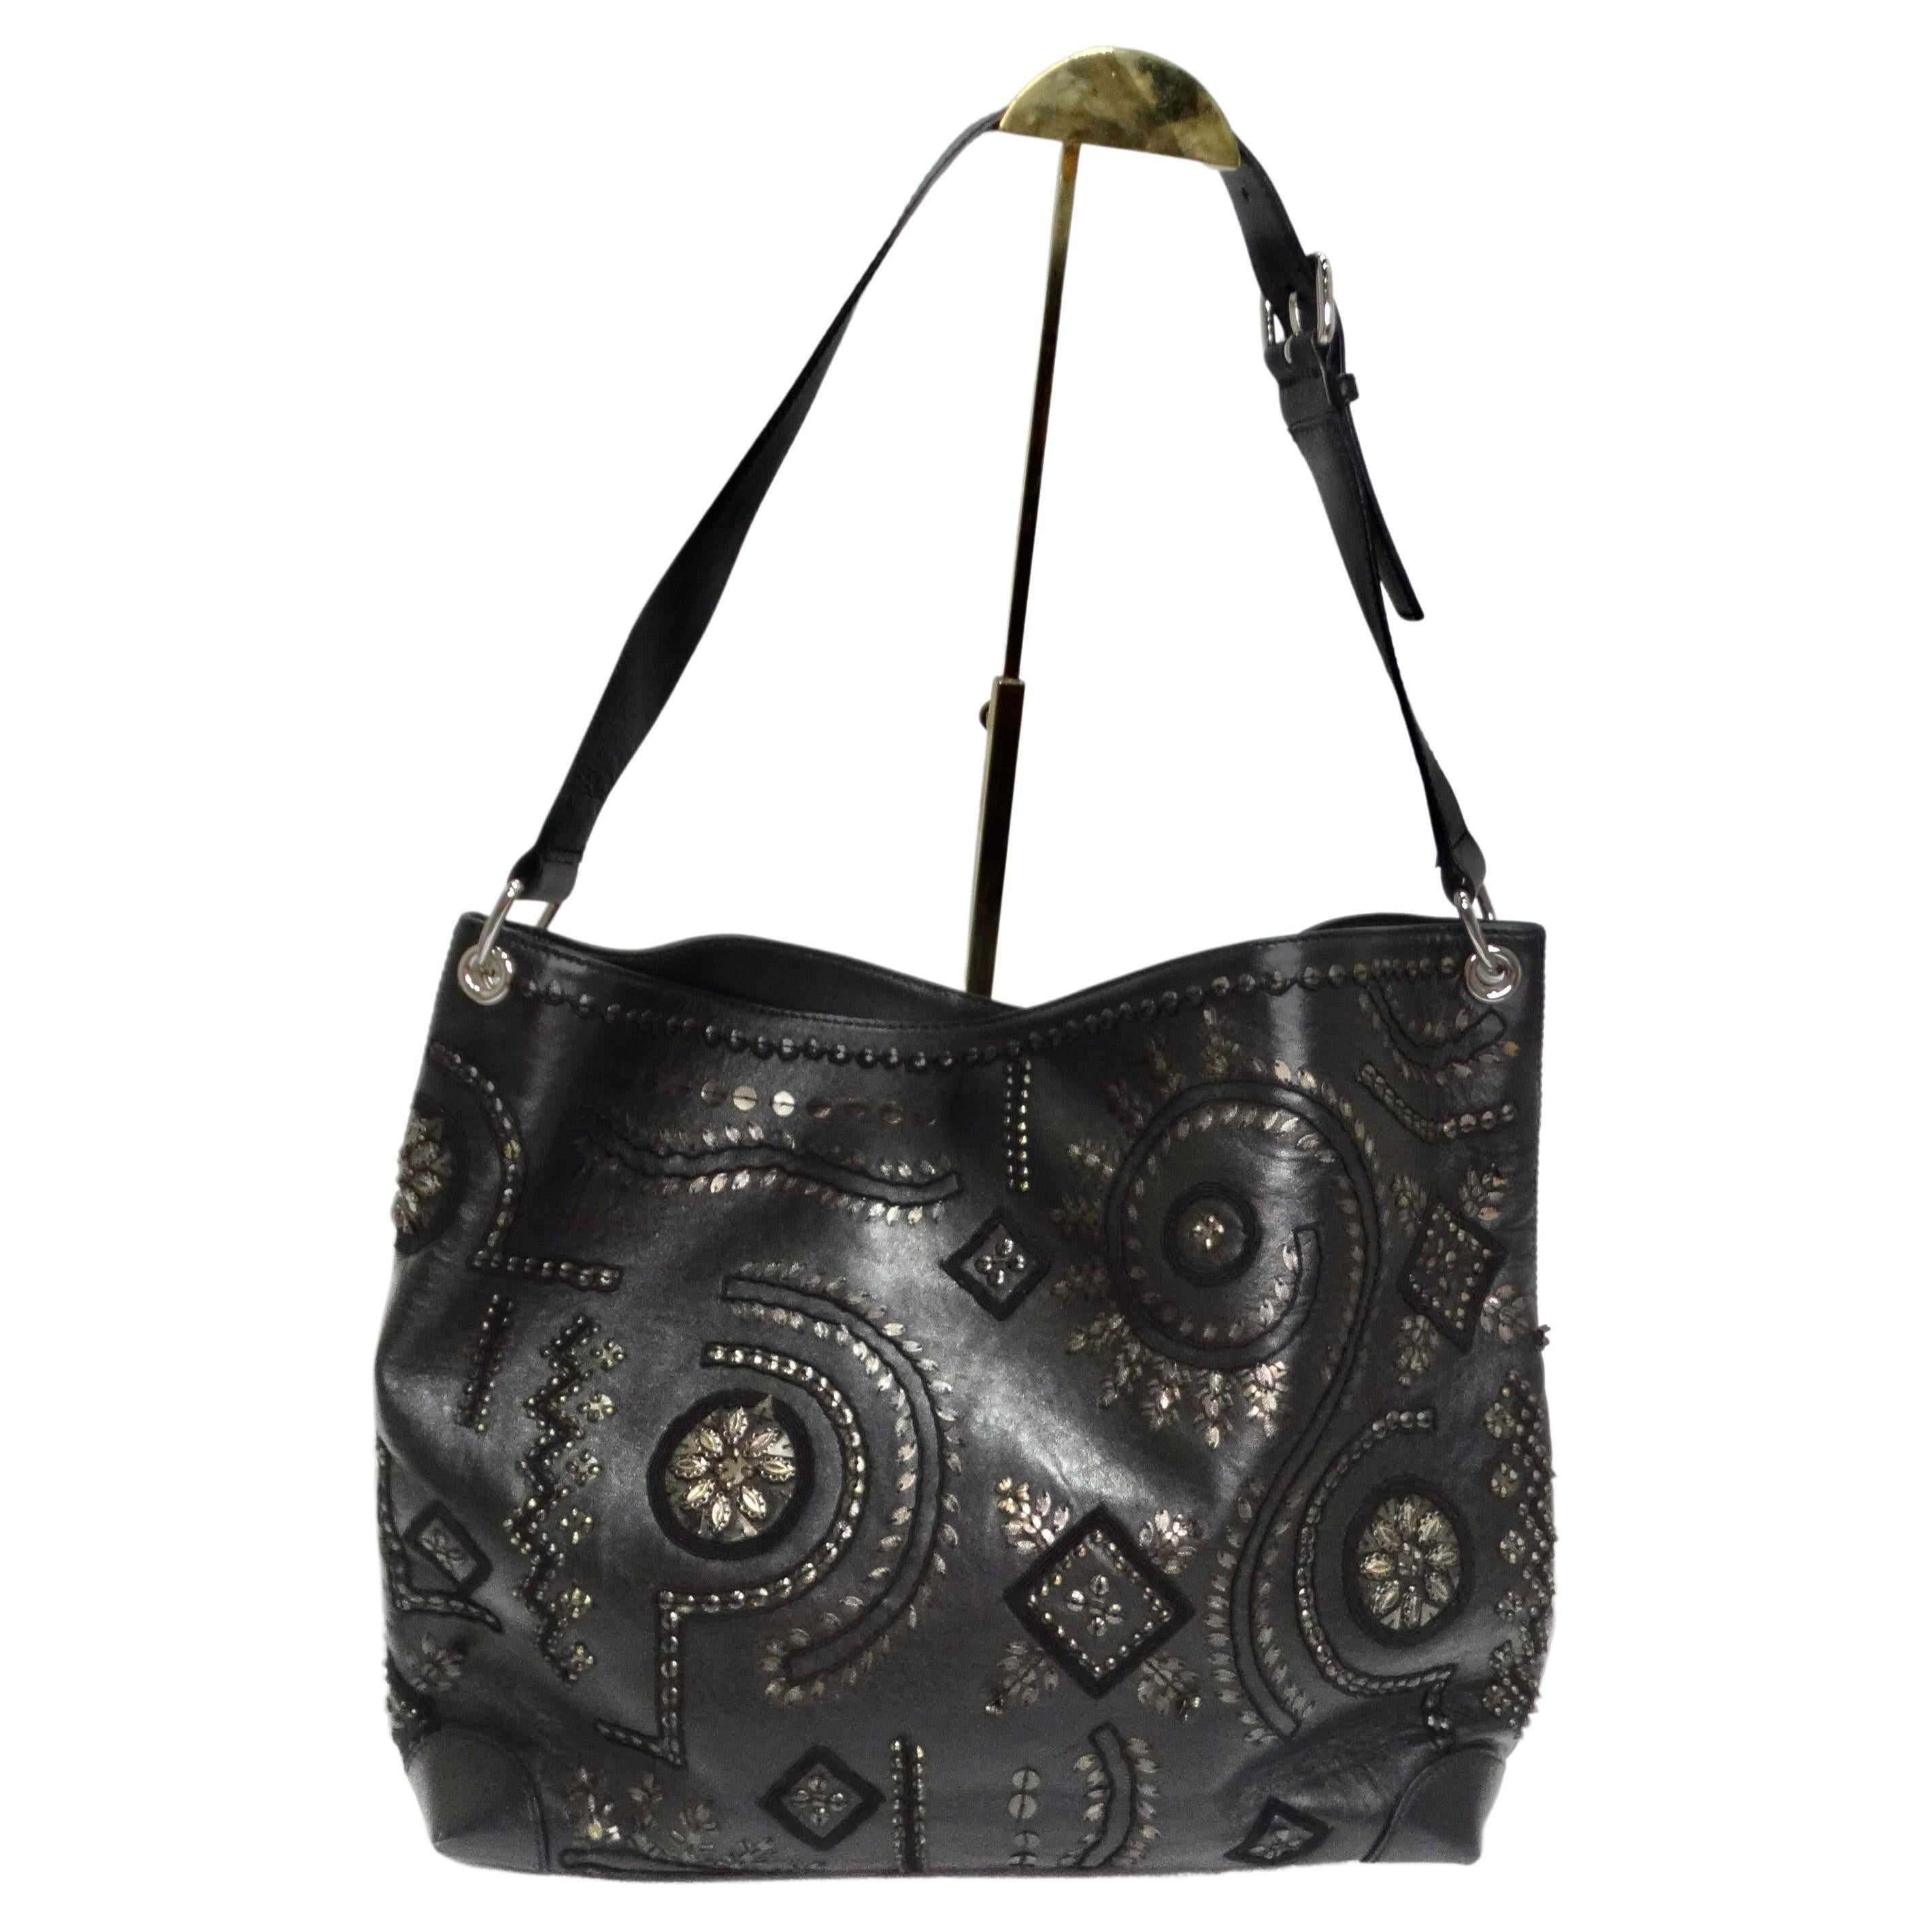 Oscar De La Renta Black Leather Embellished Tote Bag For Sale